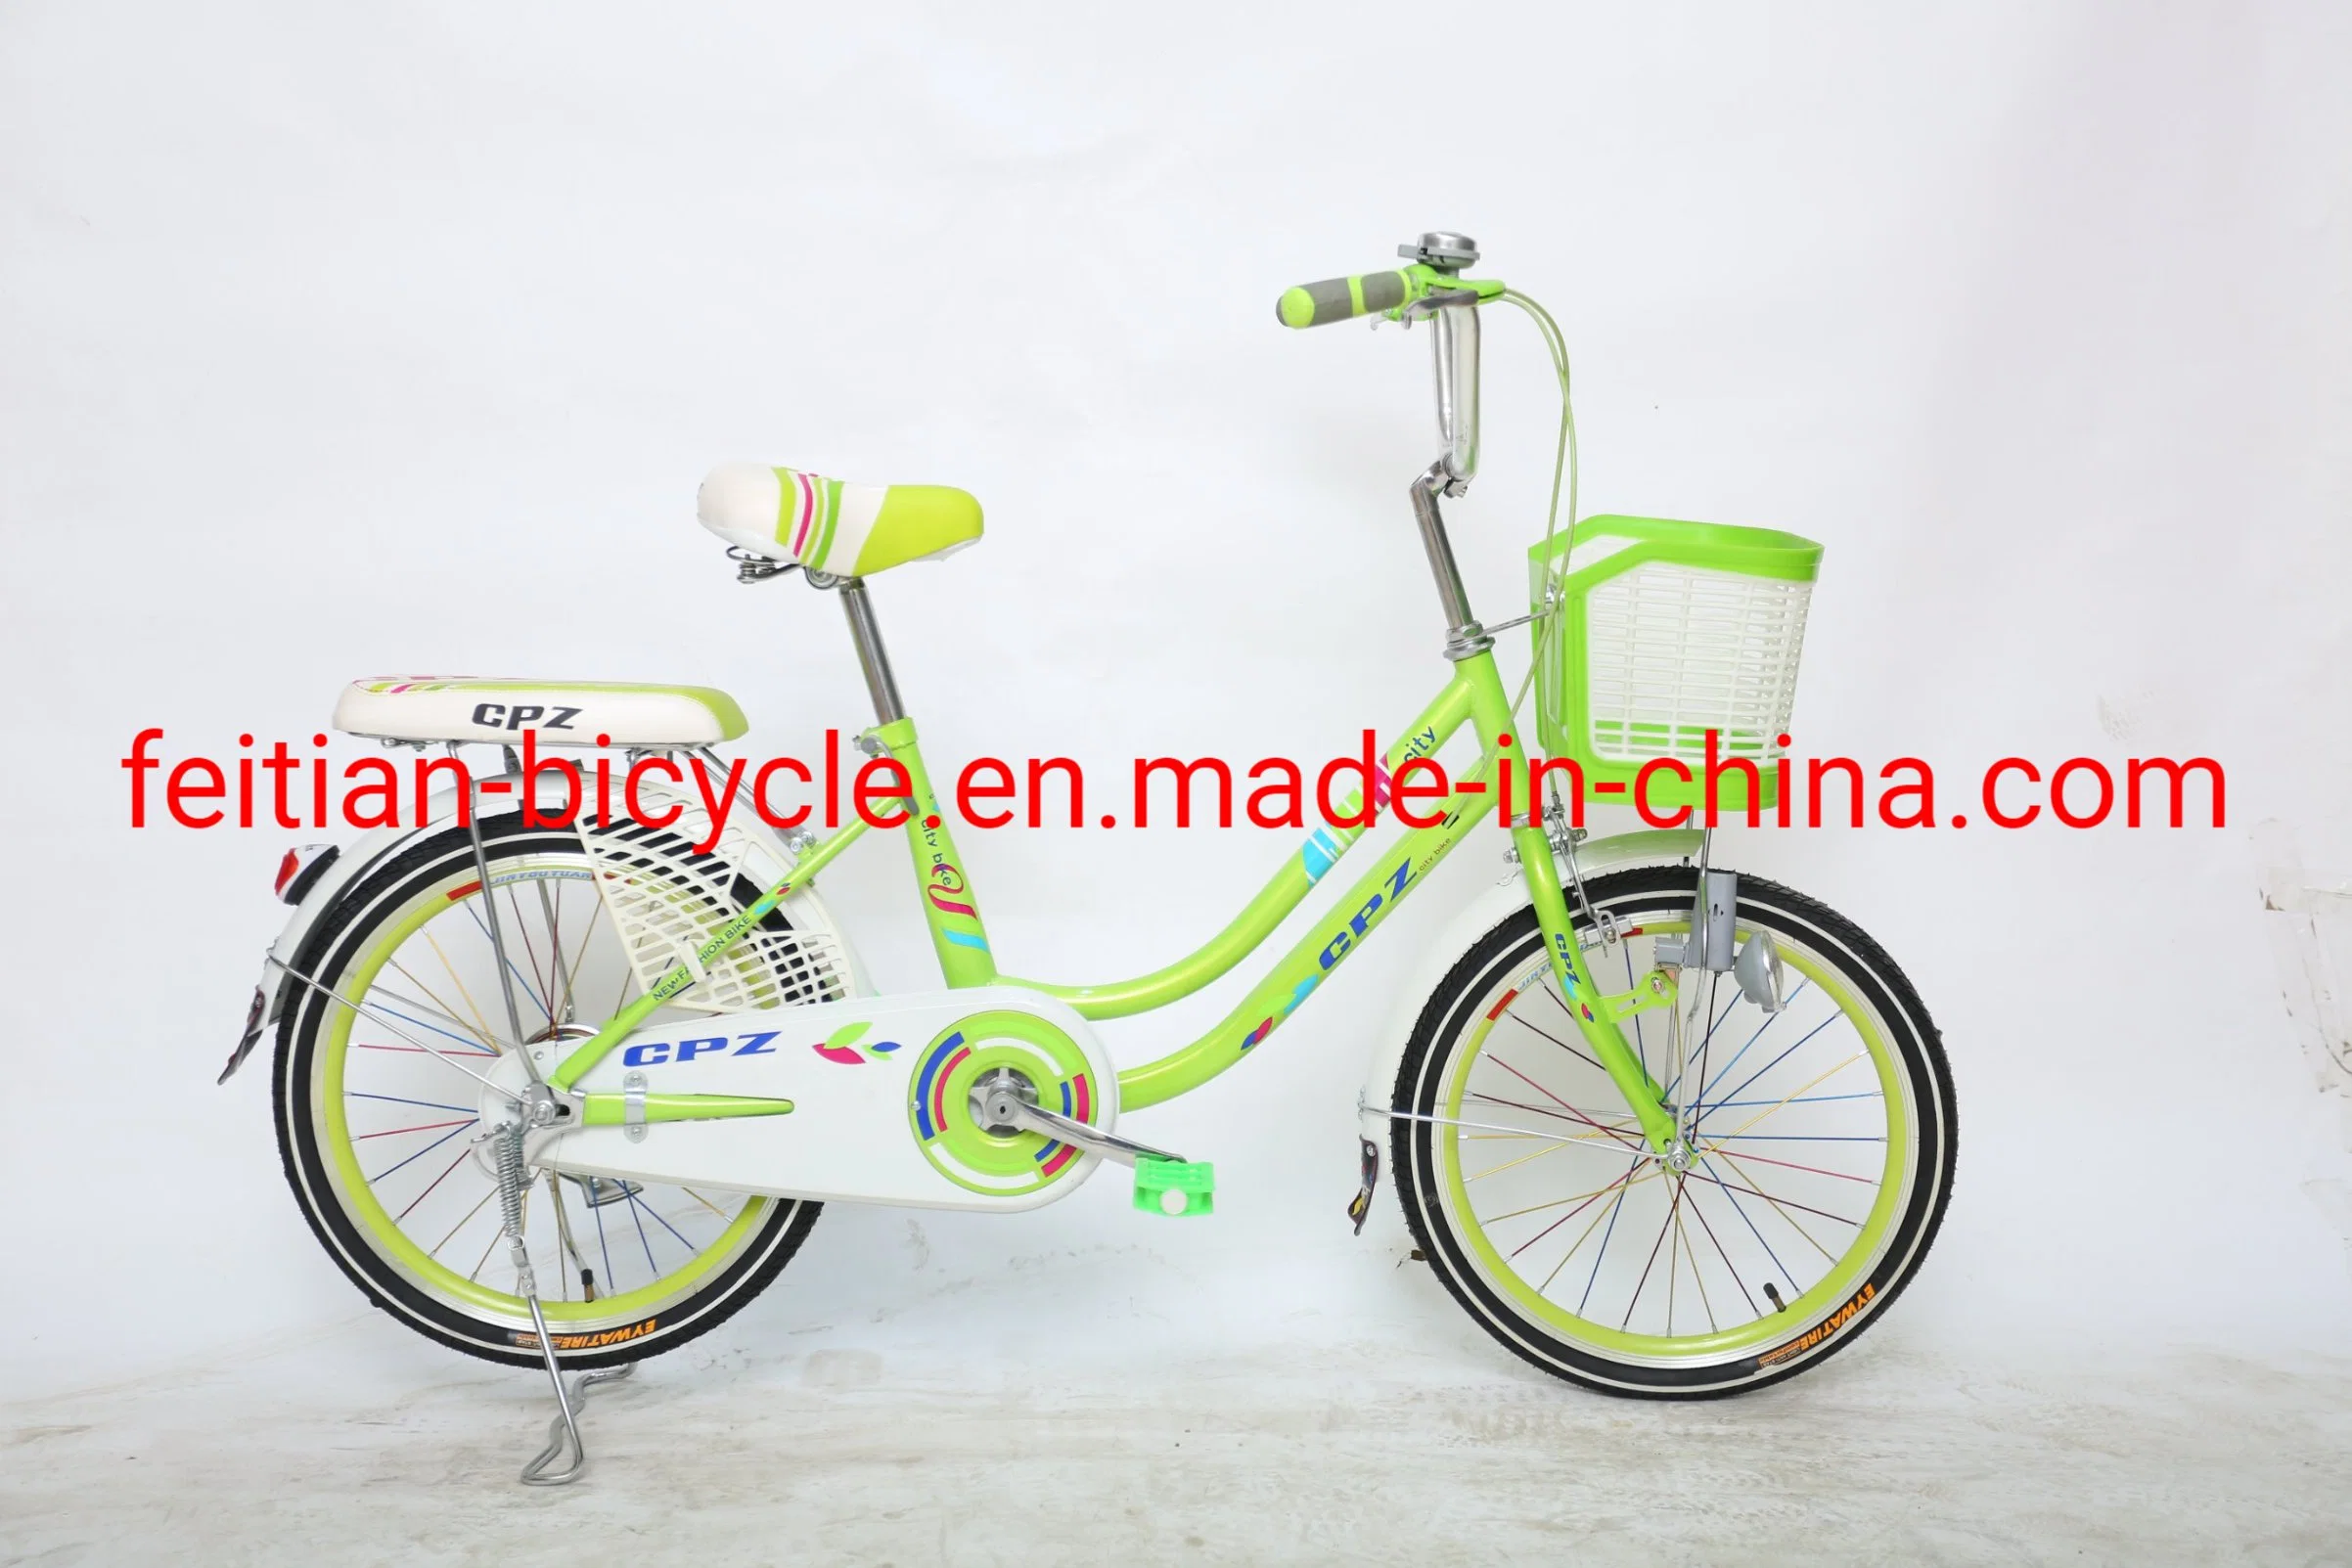 Bicicleta de Montaña 20 pulgadas/ bicicleta de la ciudad Bicicletas plegables / OEM Mini plegable Bicicletas bicicleta